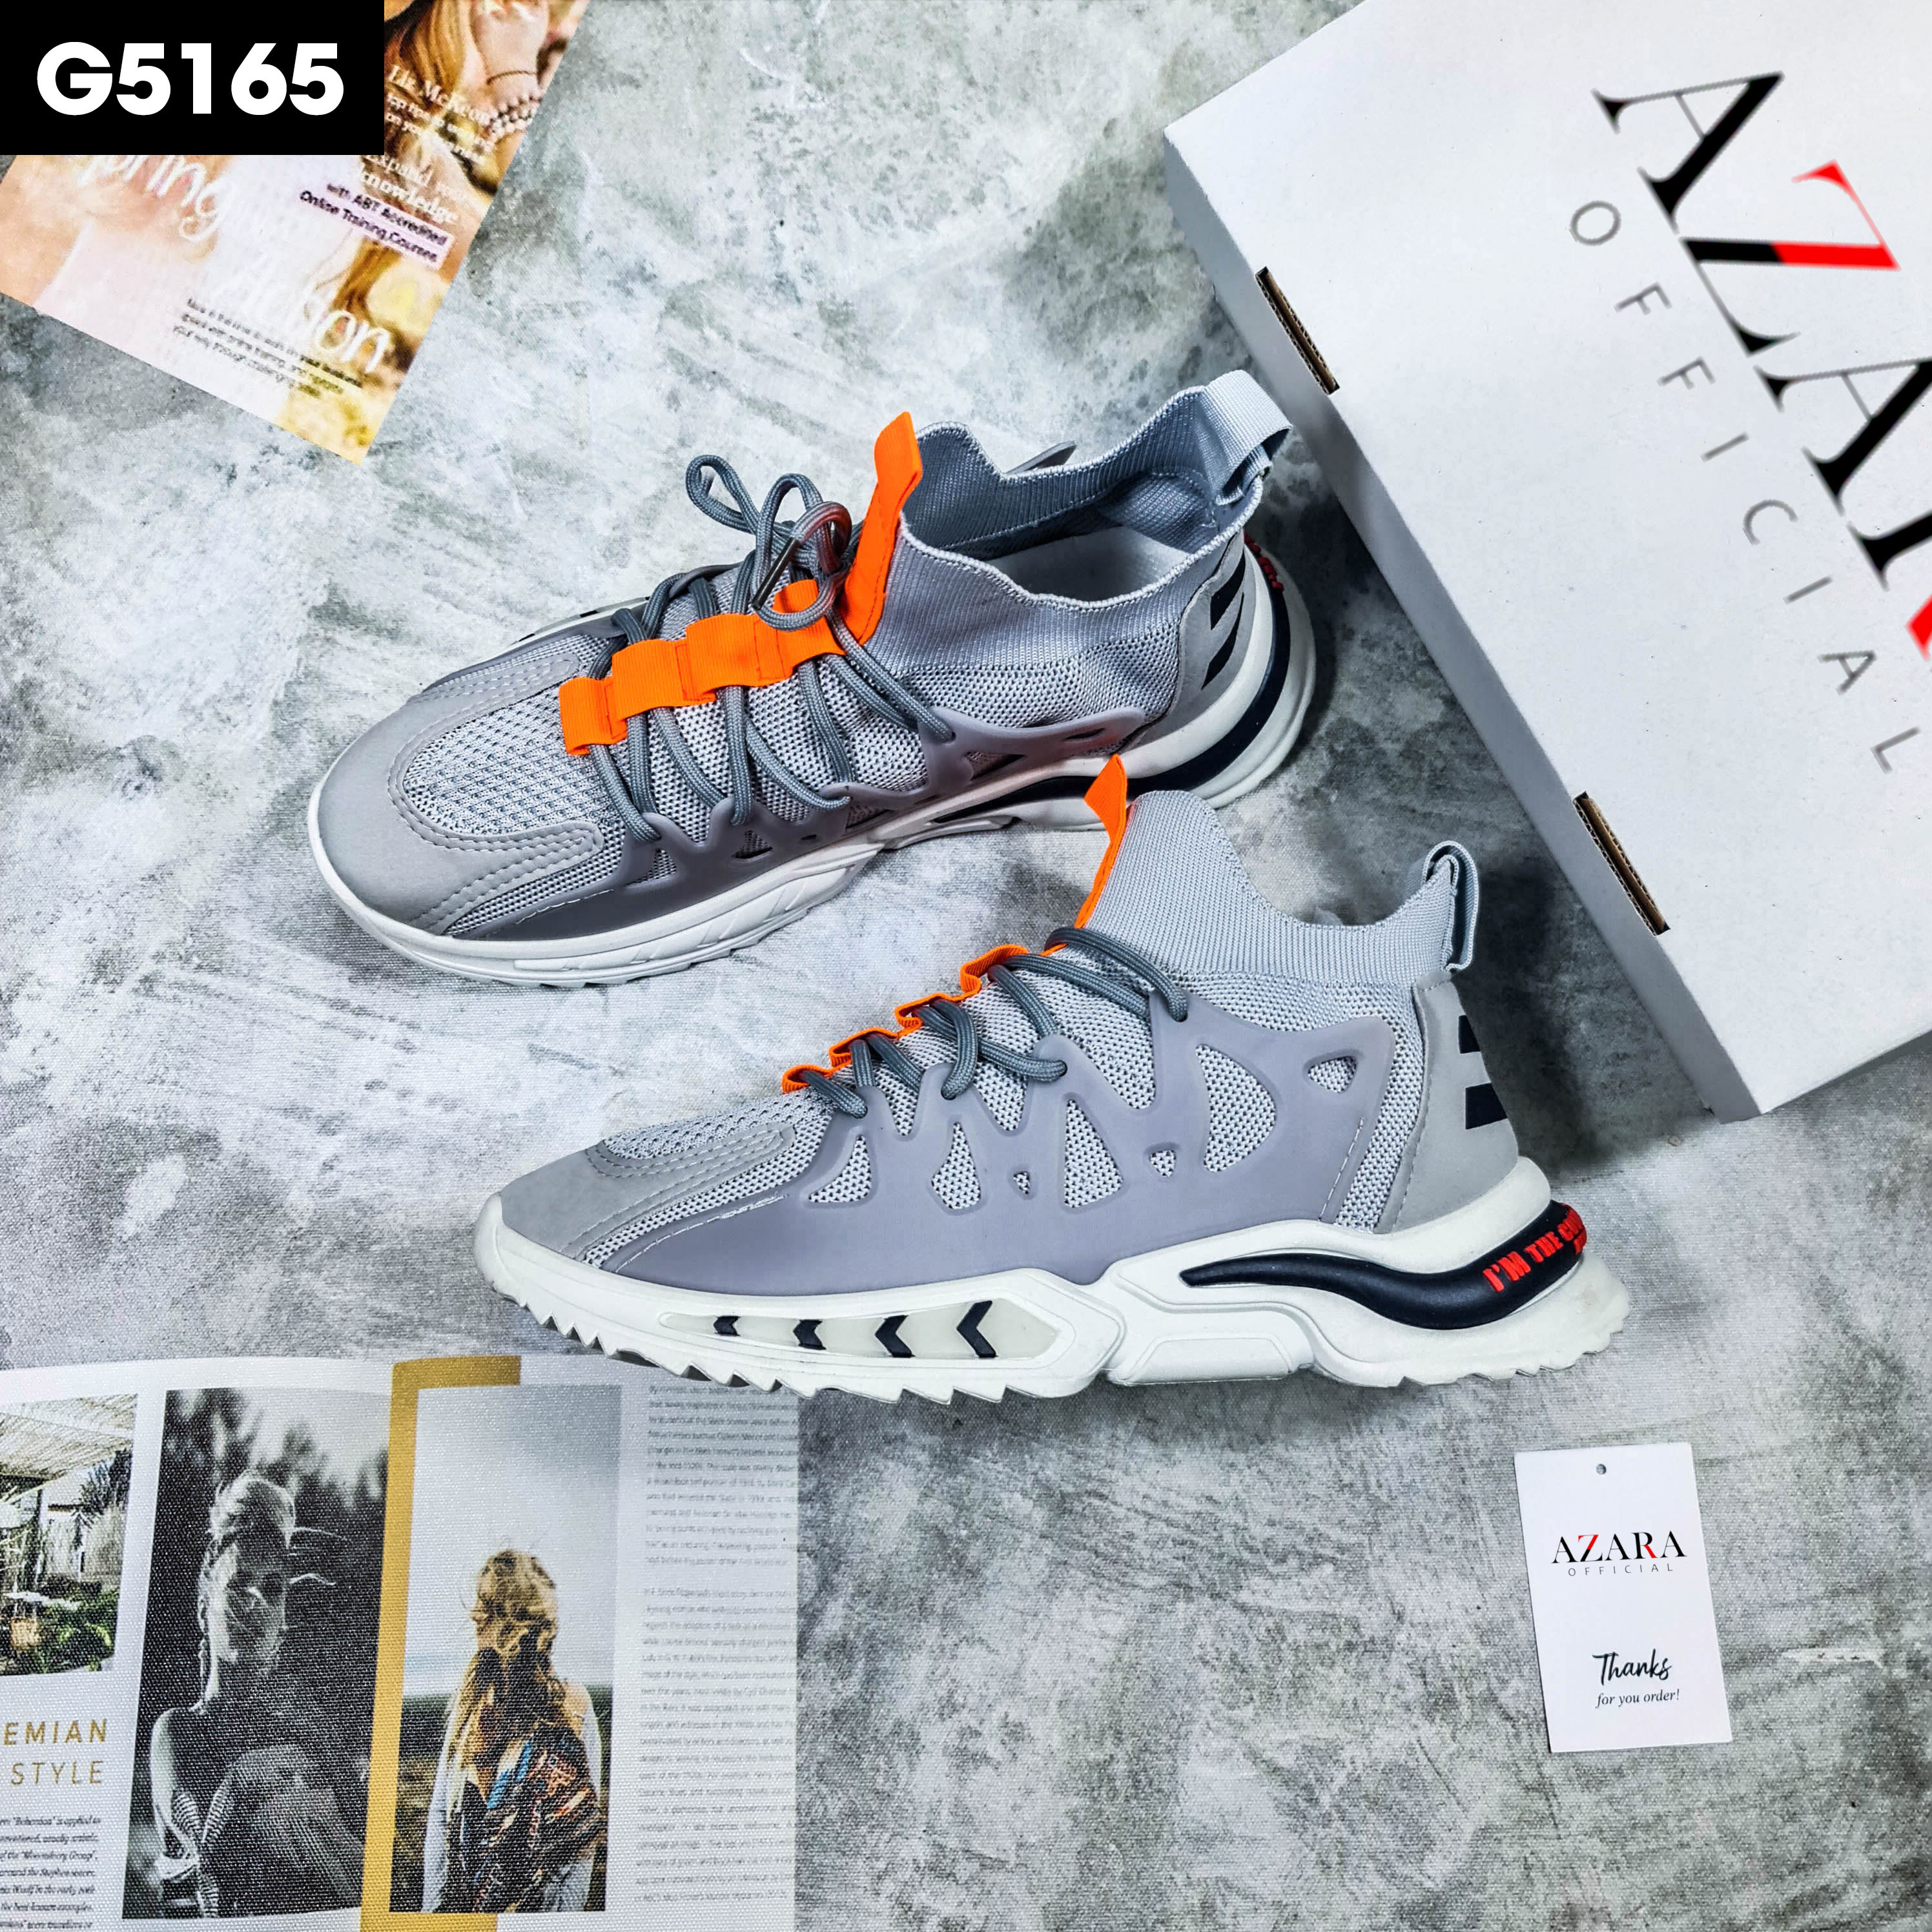 Giày Thể Thao Nam AZARA- Sneaker Màu Xám - Đen, Giày Thể Thao Cao Cổ, Thoải Mái - G5165